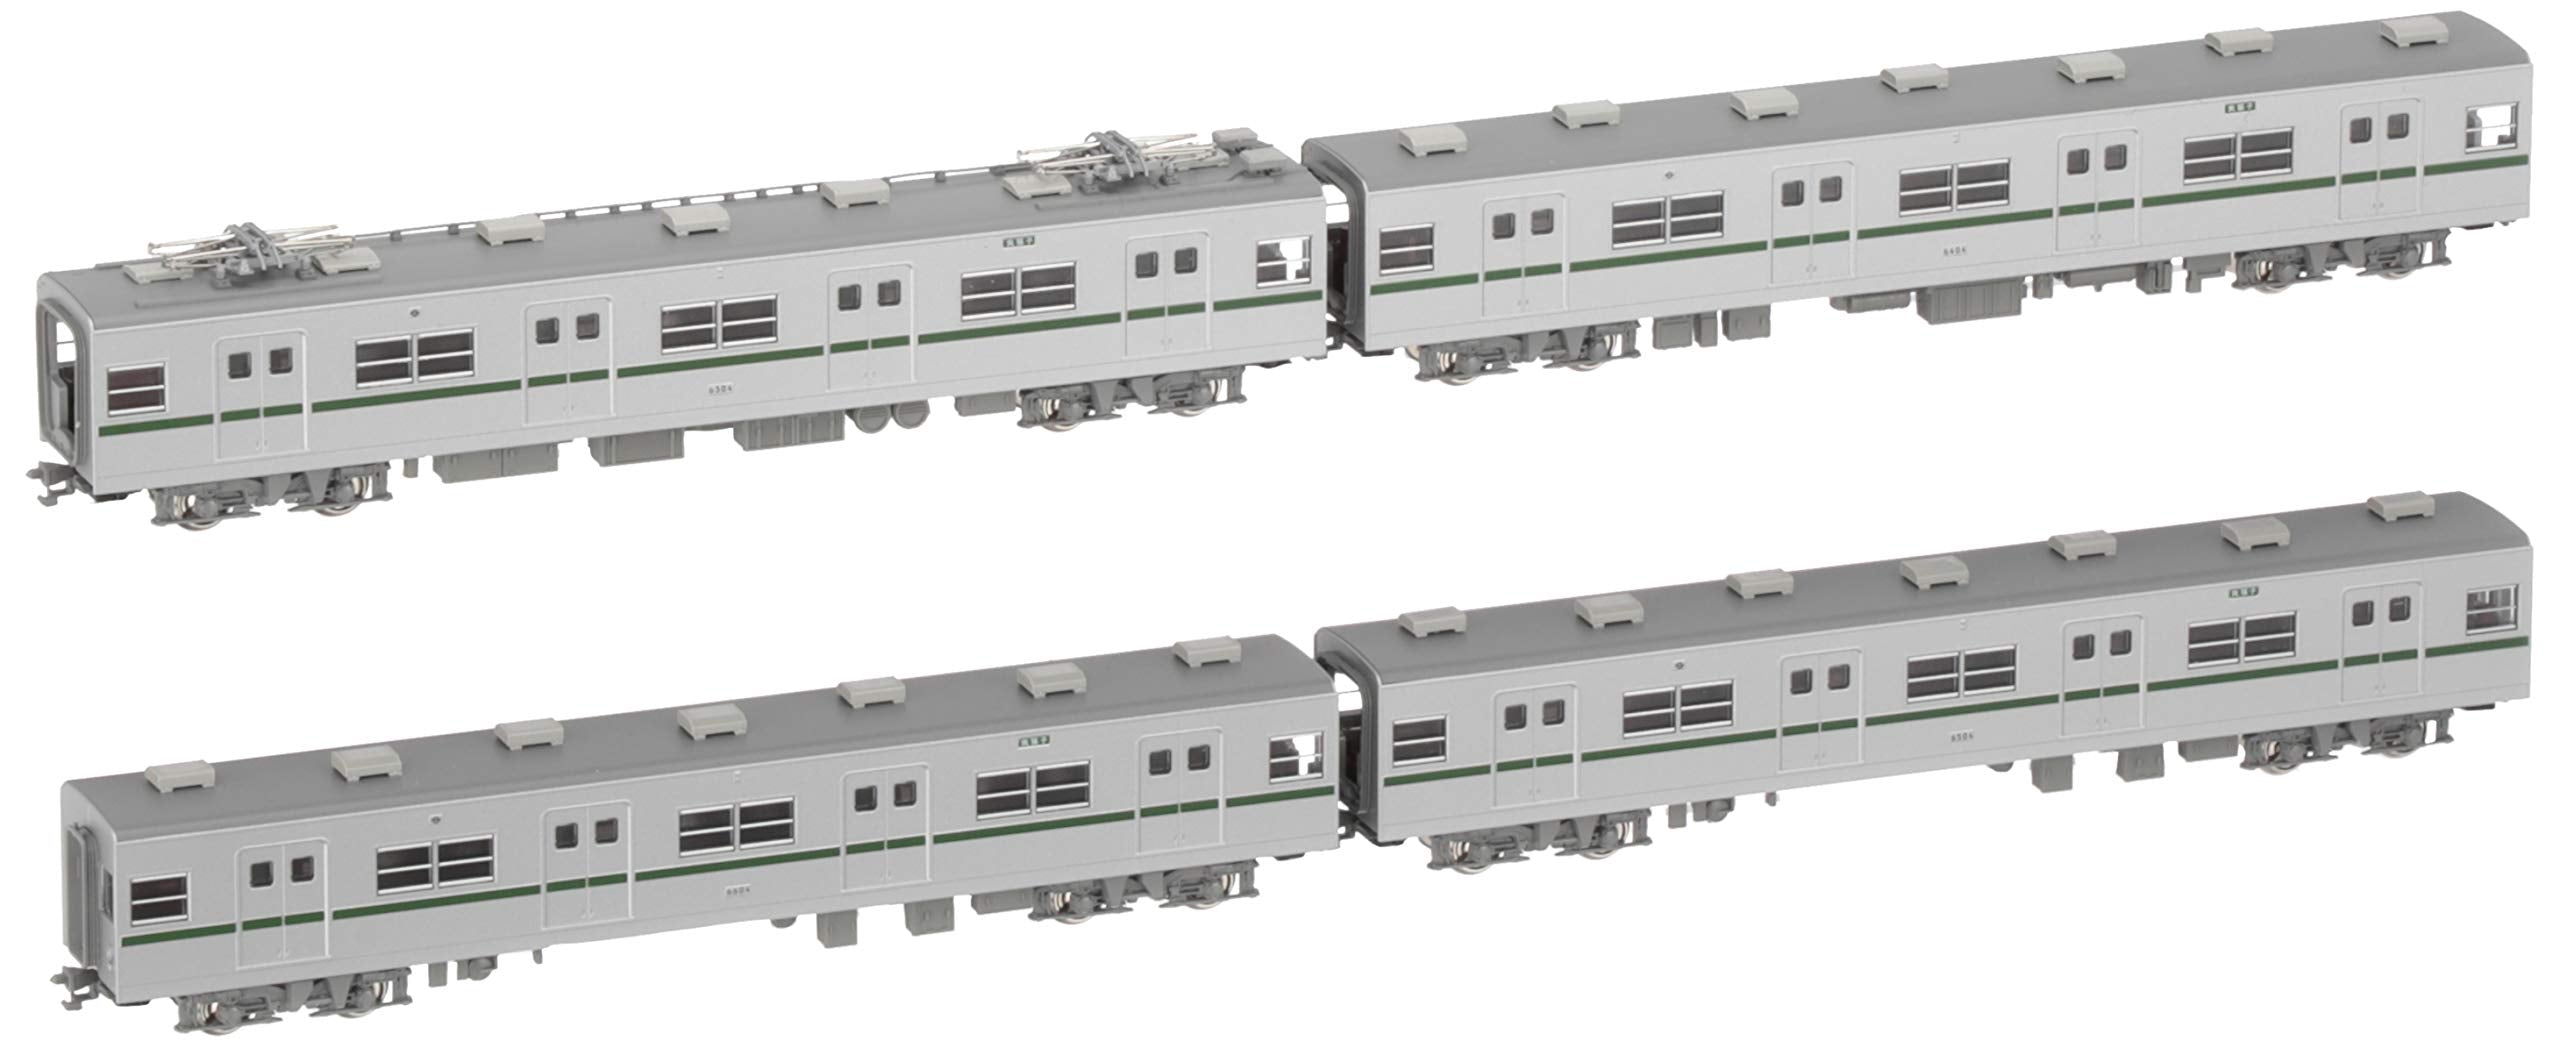 KATO N Gauge Subway Subway Chiyoda Line 6000 Series Addition 4-car set 10-1144